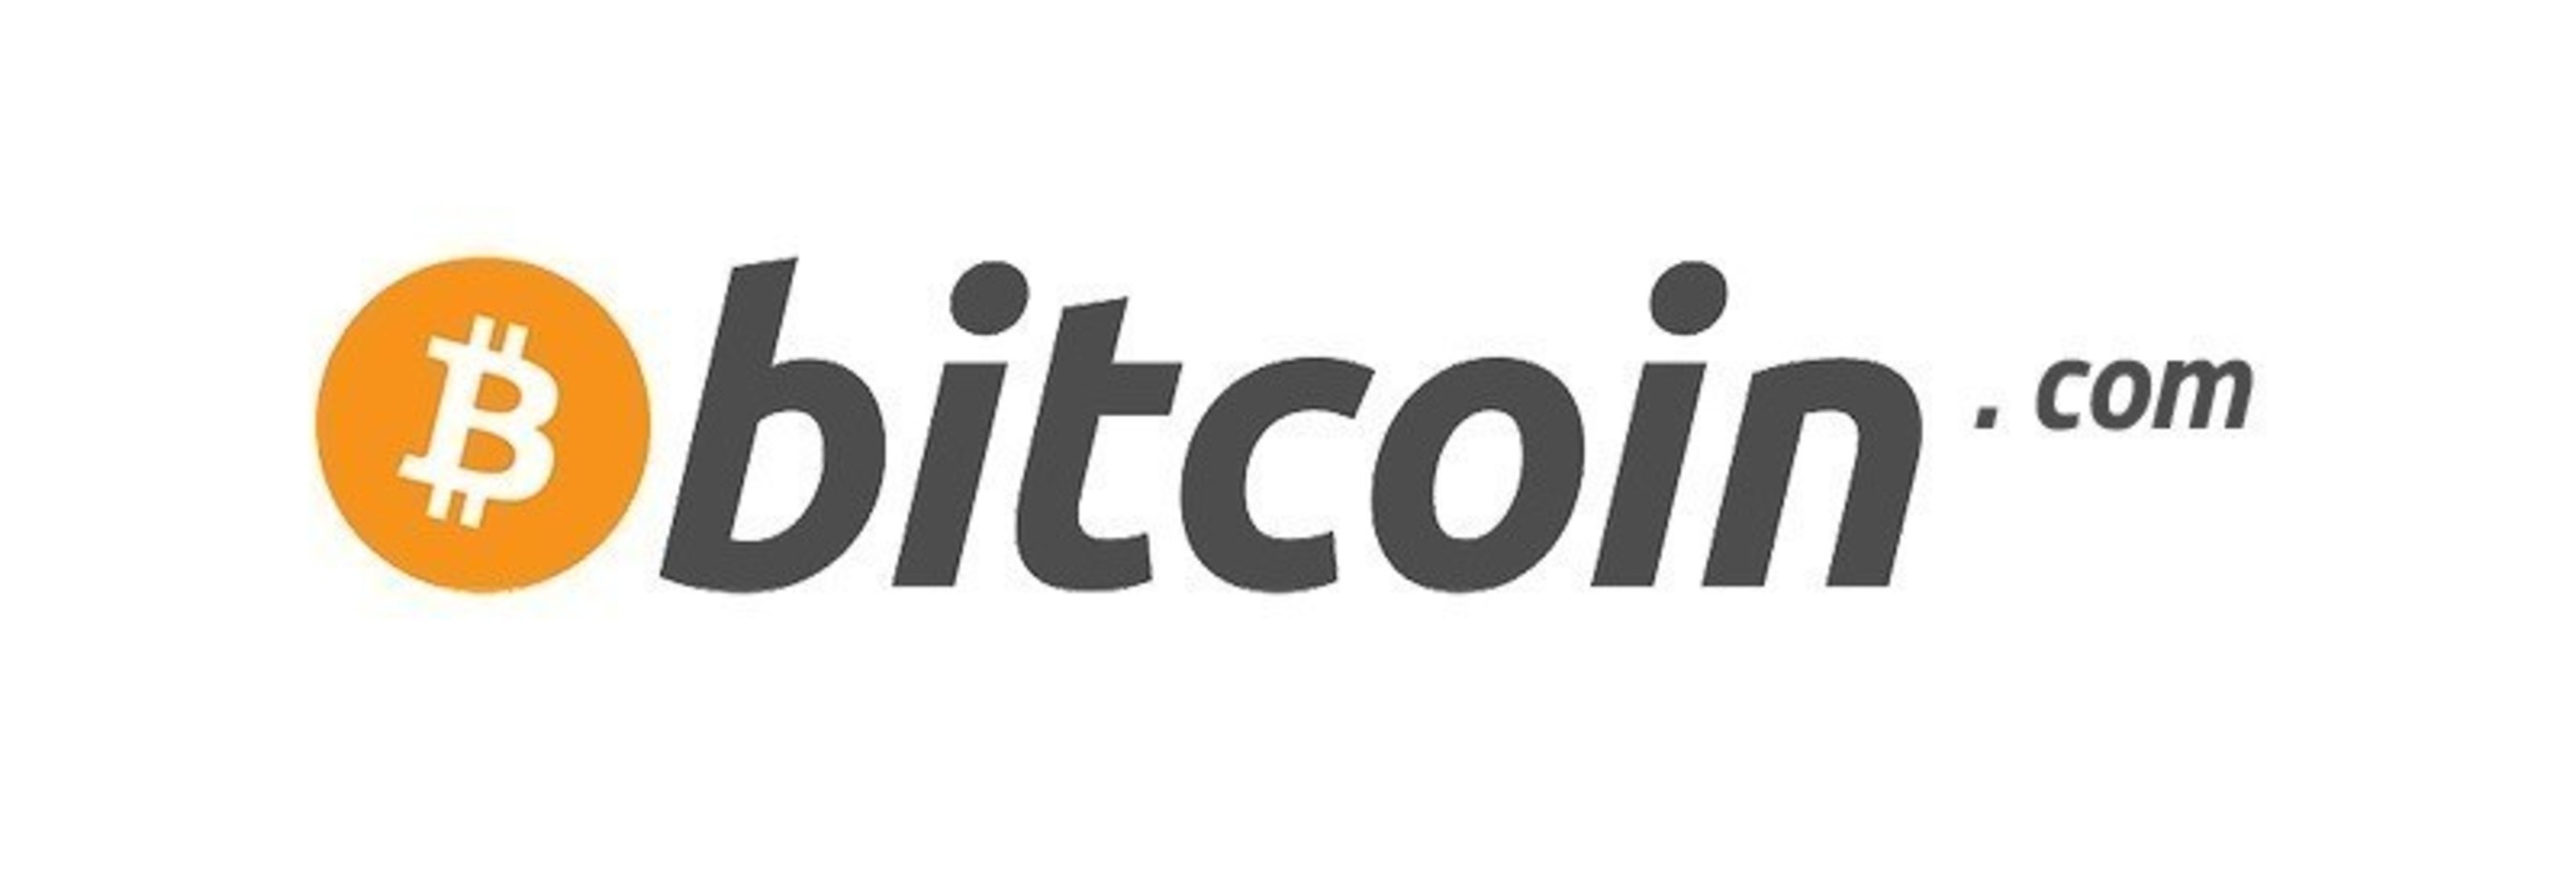 bitcoin org forum